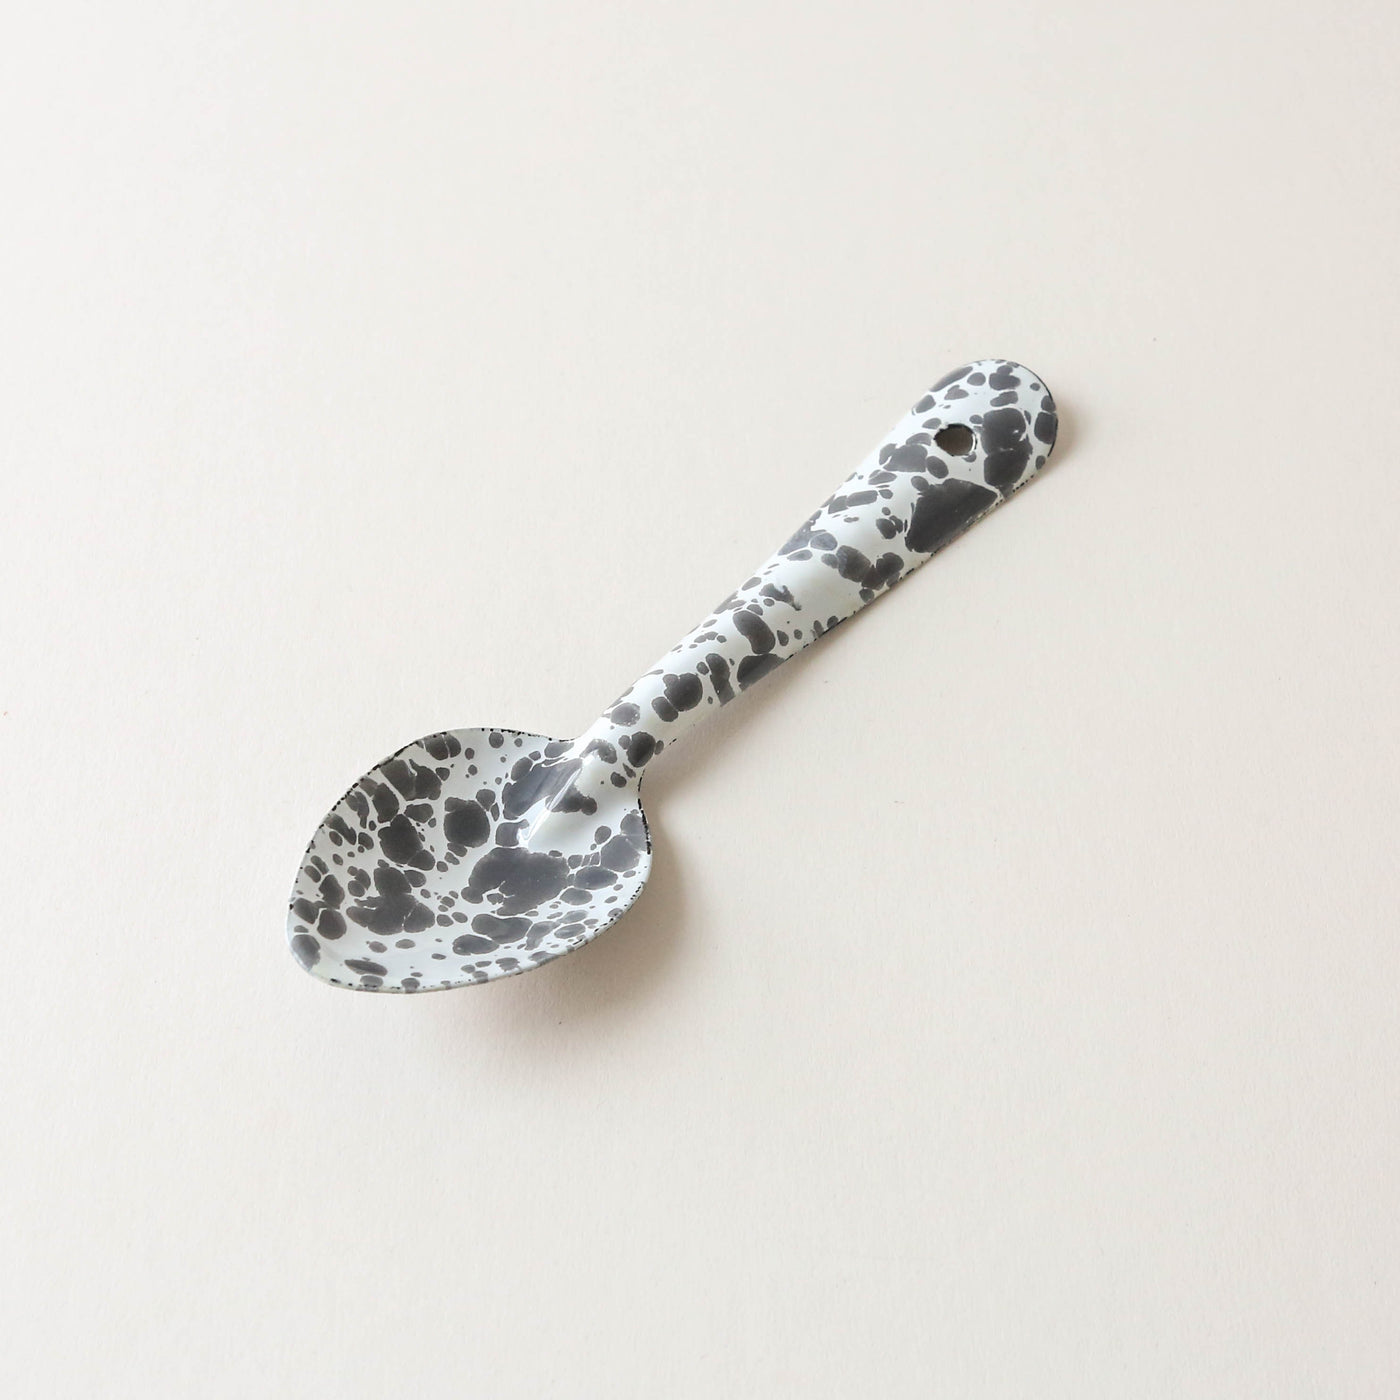 Splatter Enamel Spoon - Small